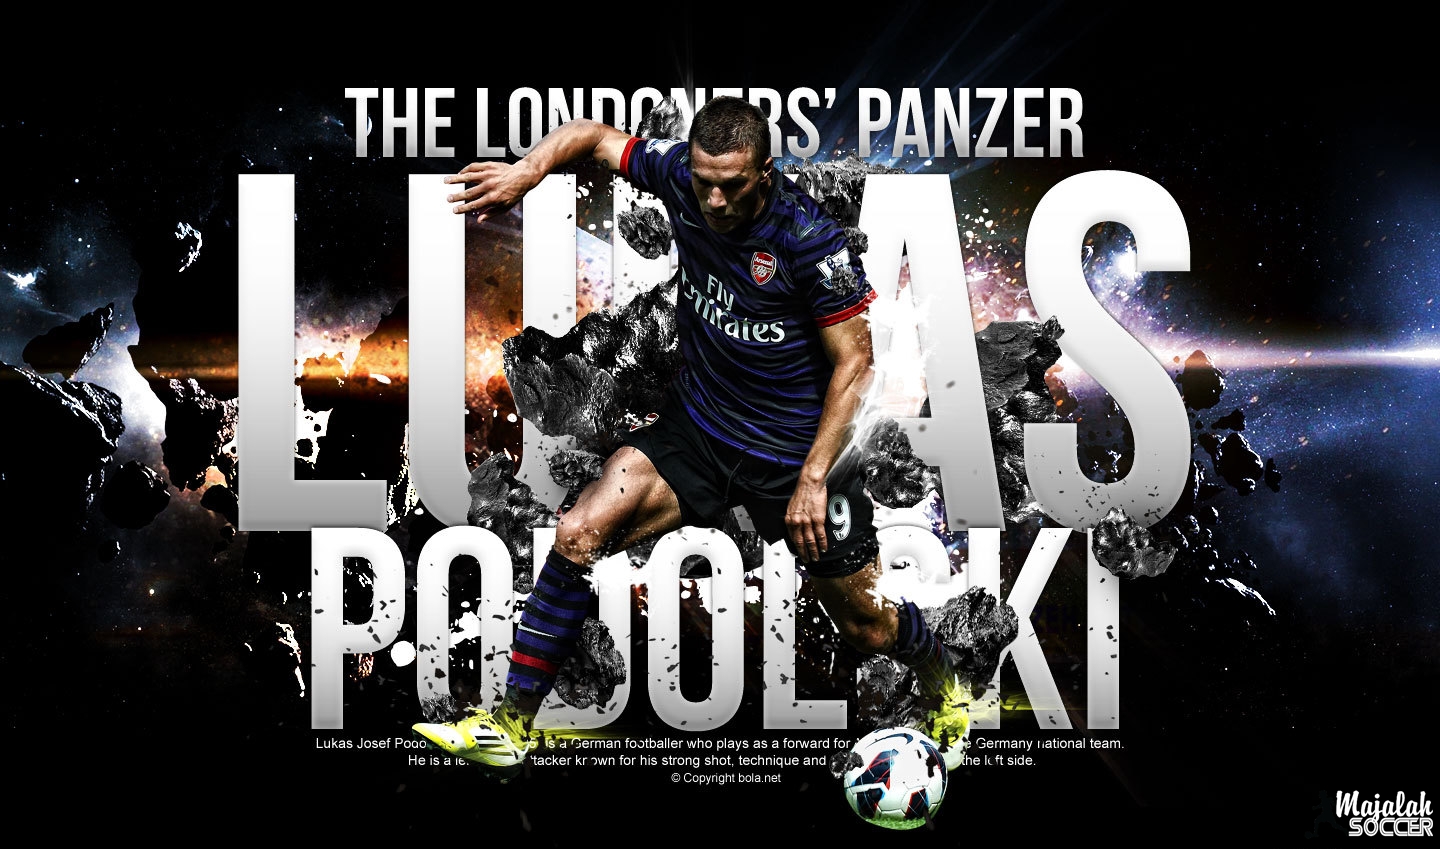 Arsenal Lucas Podolski Wallpaper Hd - HD Wallpaper 